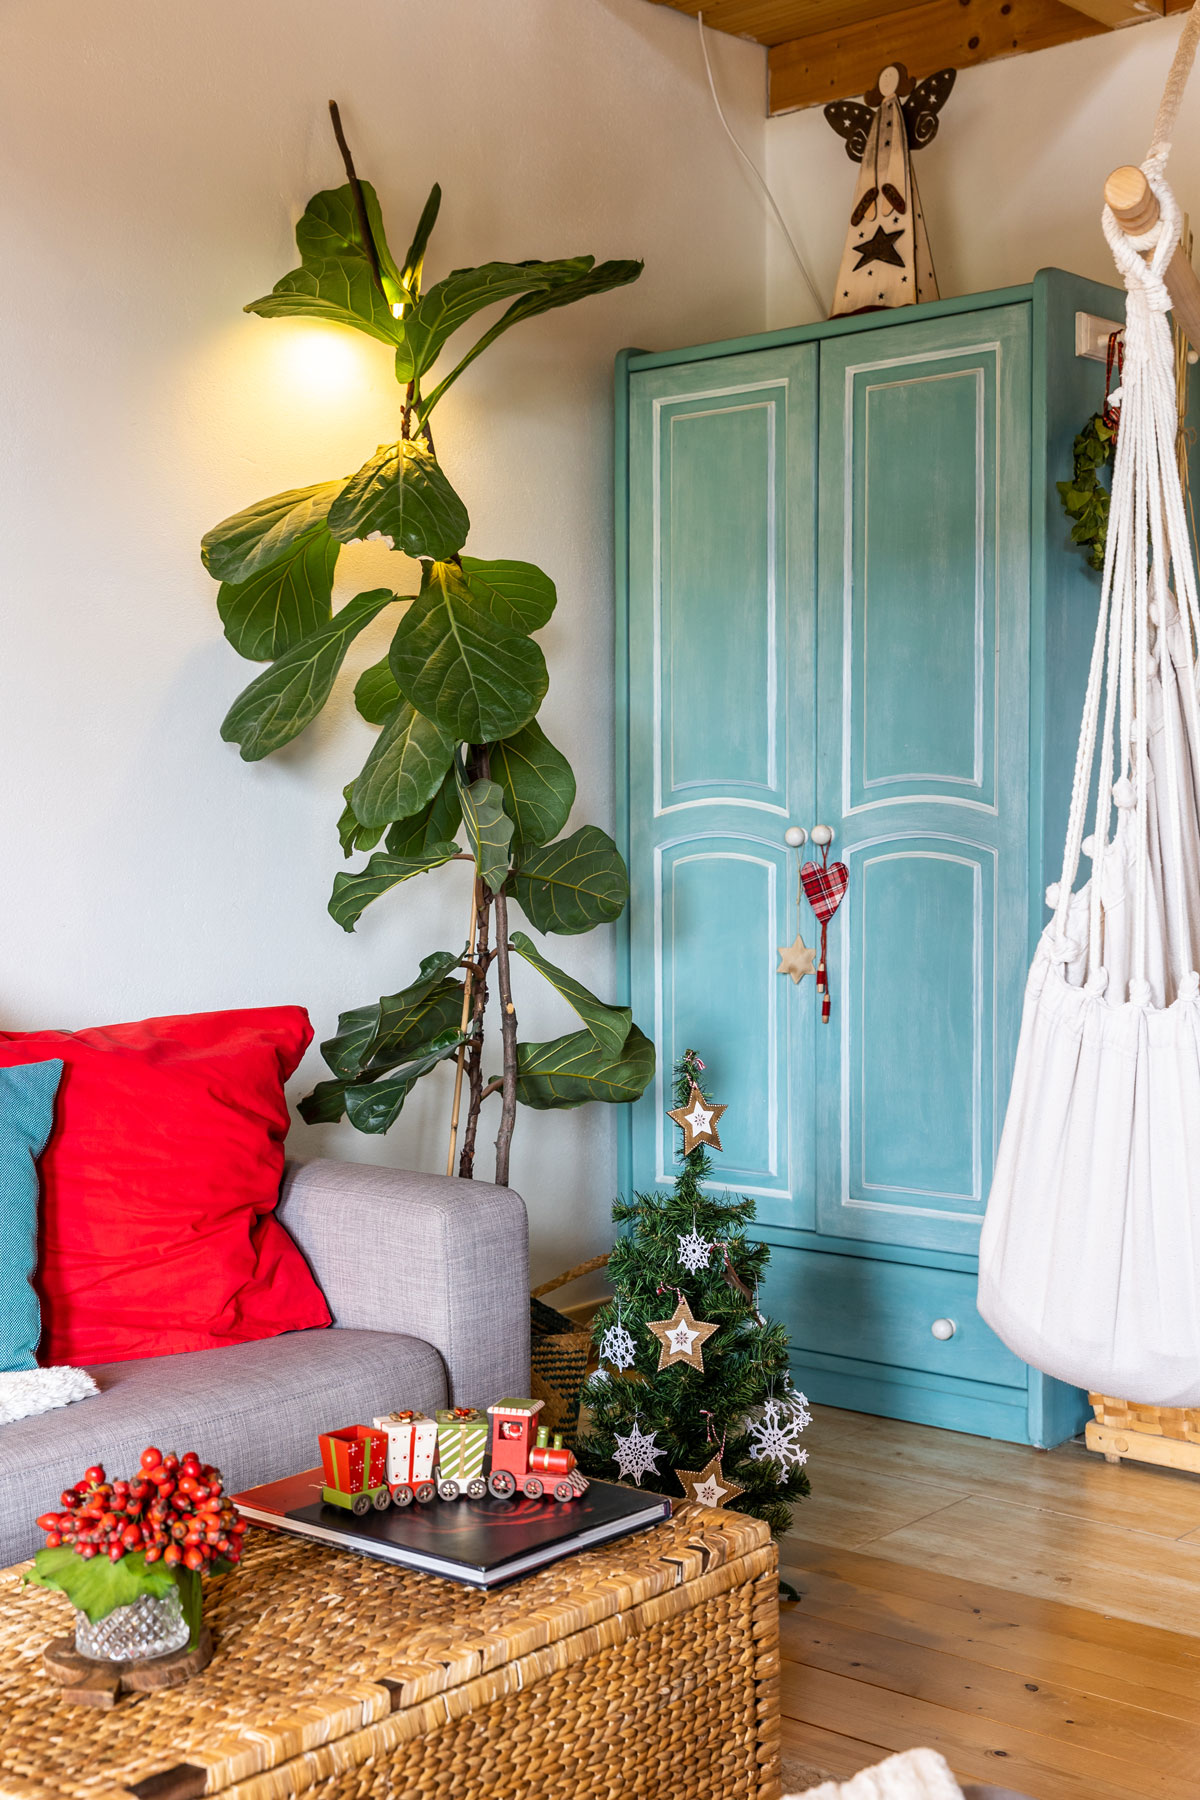 obývačka so zrenovovanou skriňou, malým vianočným stromčekom, sivou sedačkou a prúteným košom, ktorý slúži ako konferenčný stolík